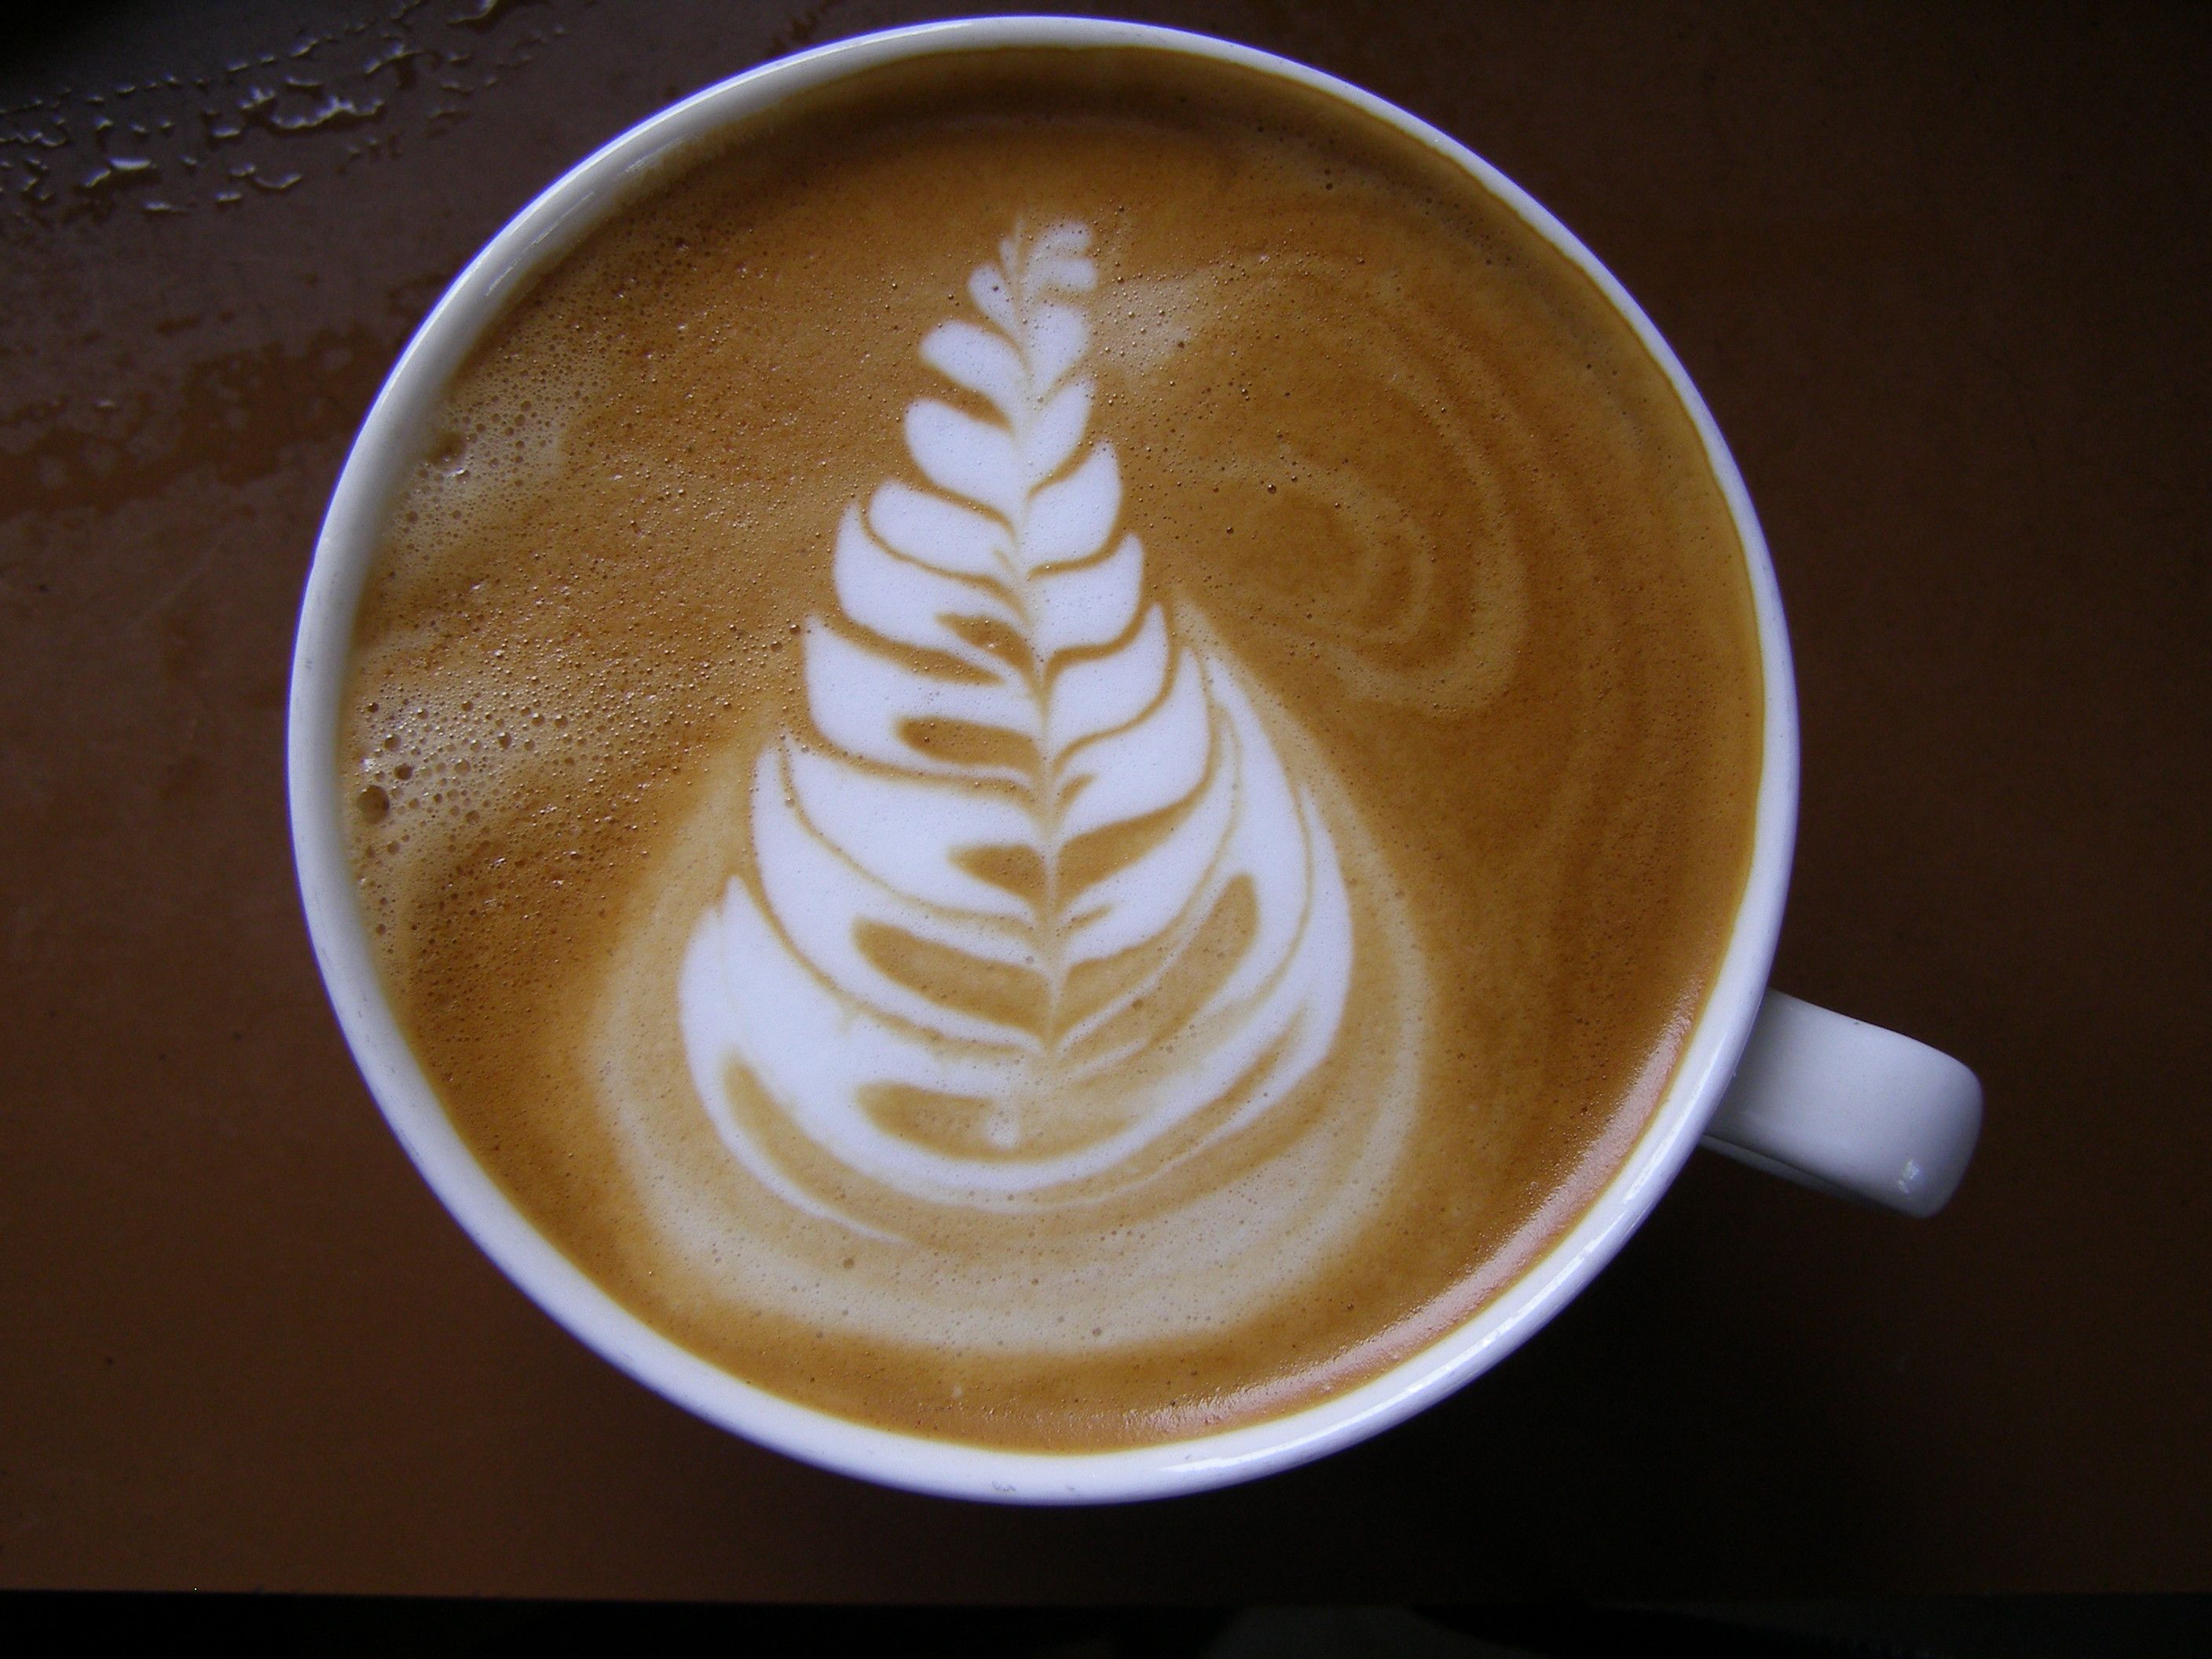 minesalatte - en güzel latte artlar